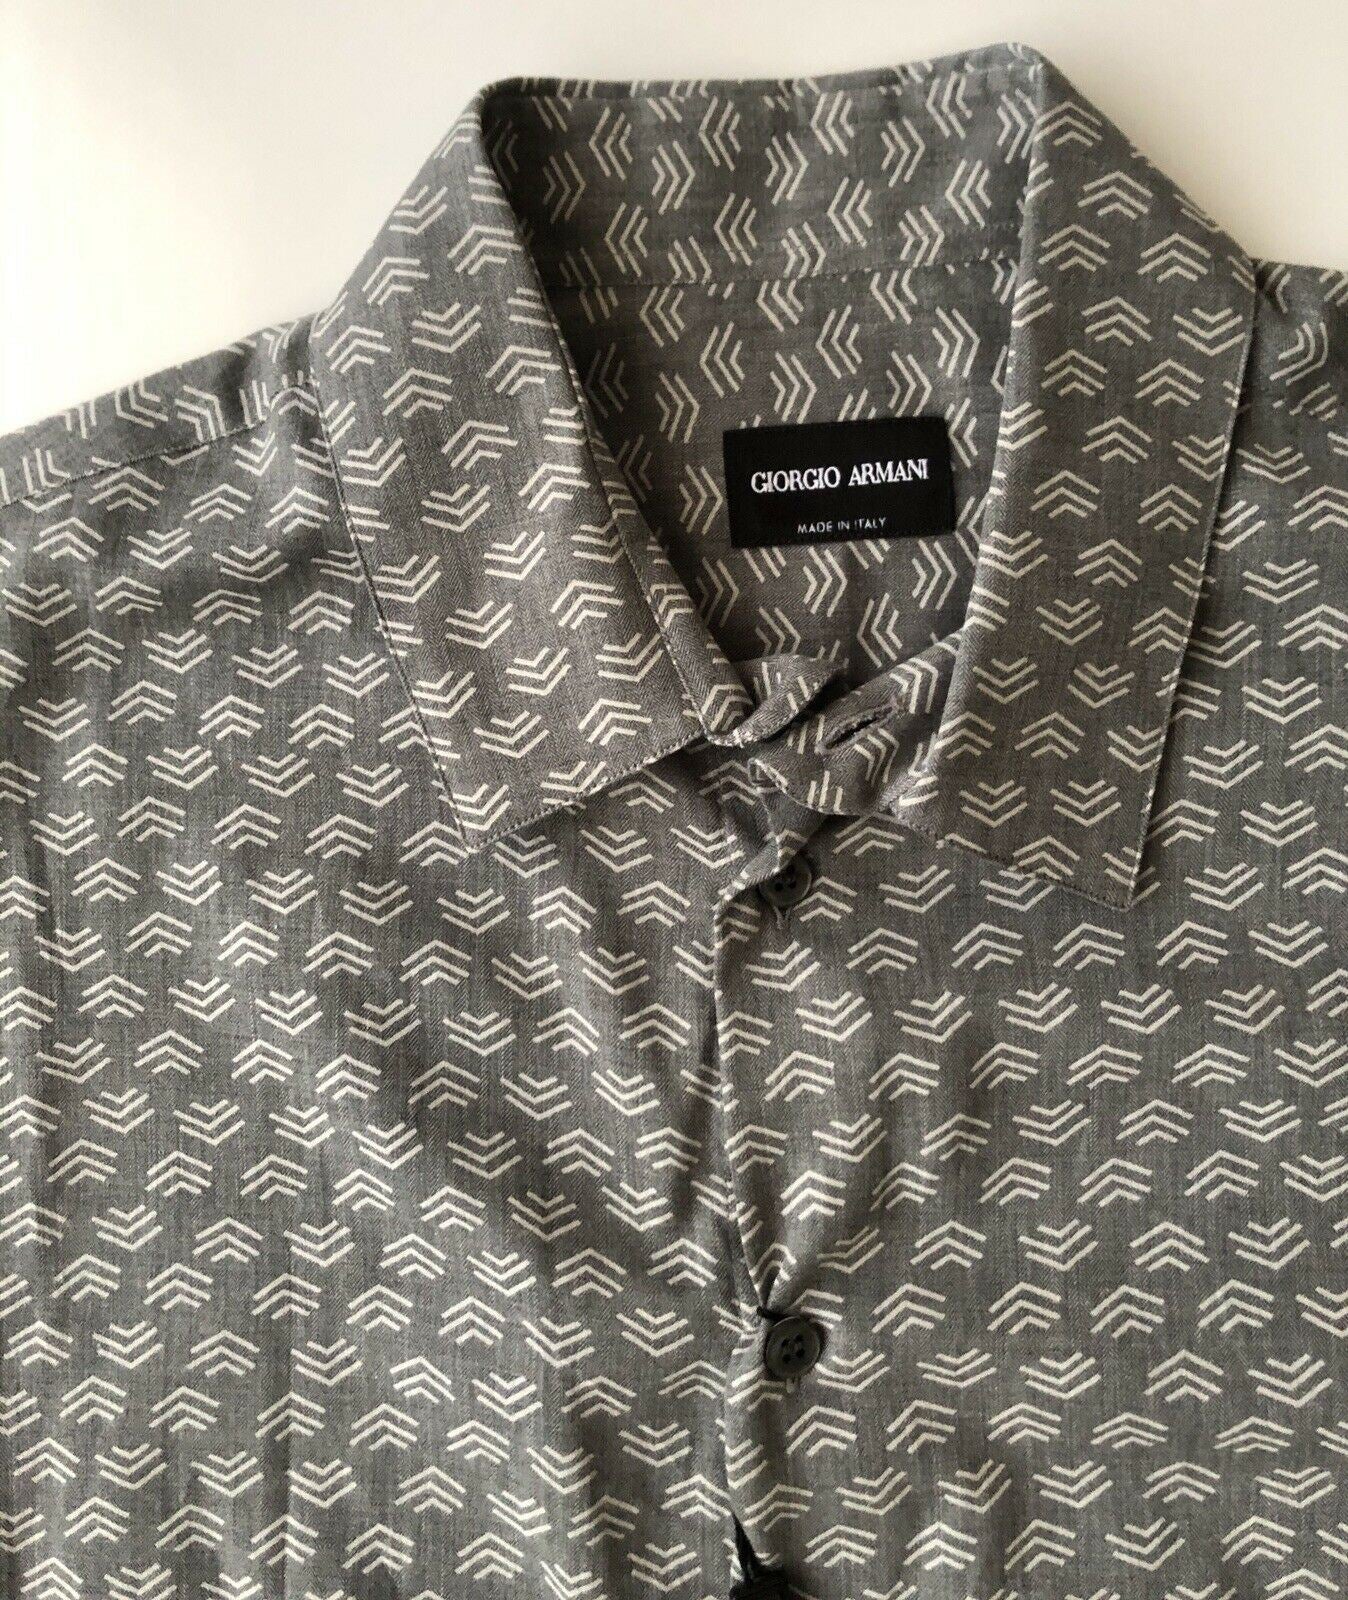 NWT $645 Giorgio Armani Mens Cotton Dress Shirt 40 EU Made in Italy 8WGCCZ97